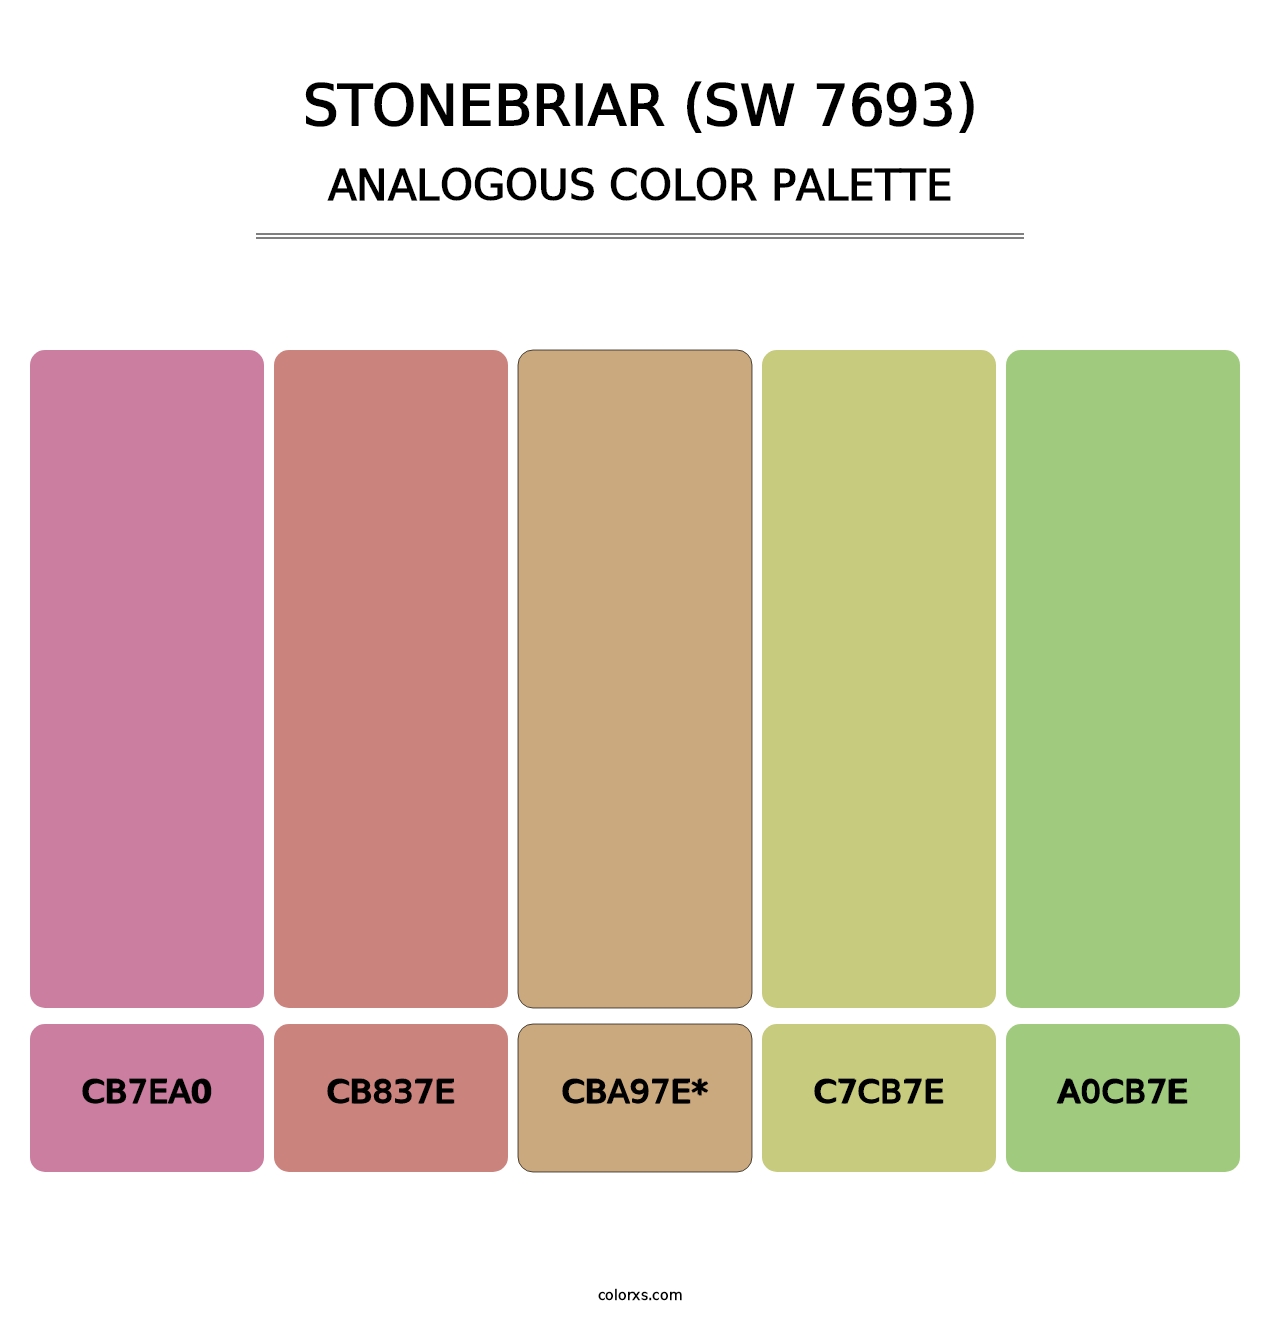 Stonebriar (SW 7693) - Analogous Color Palette